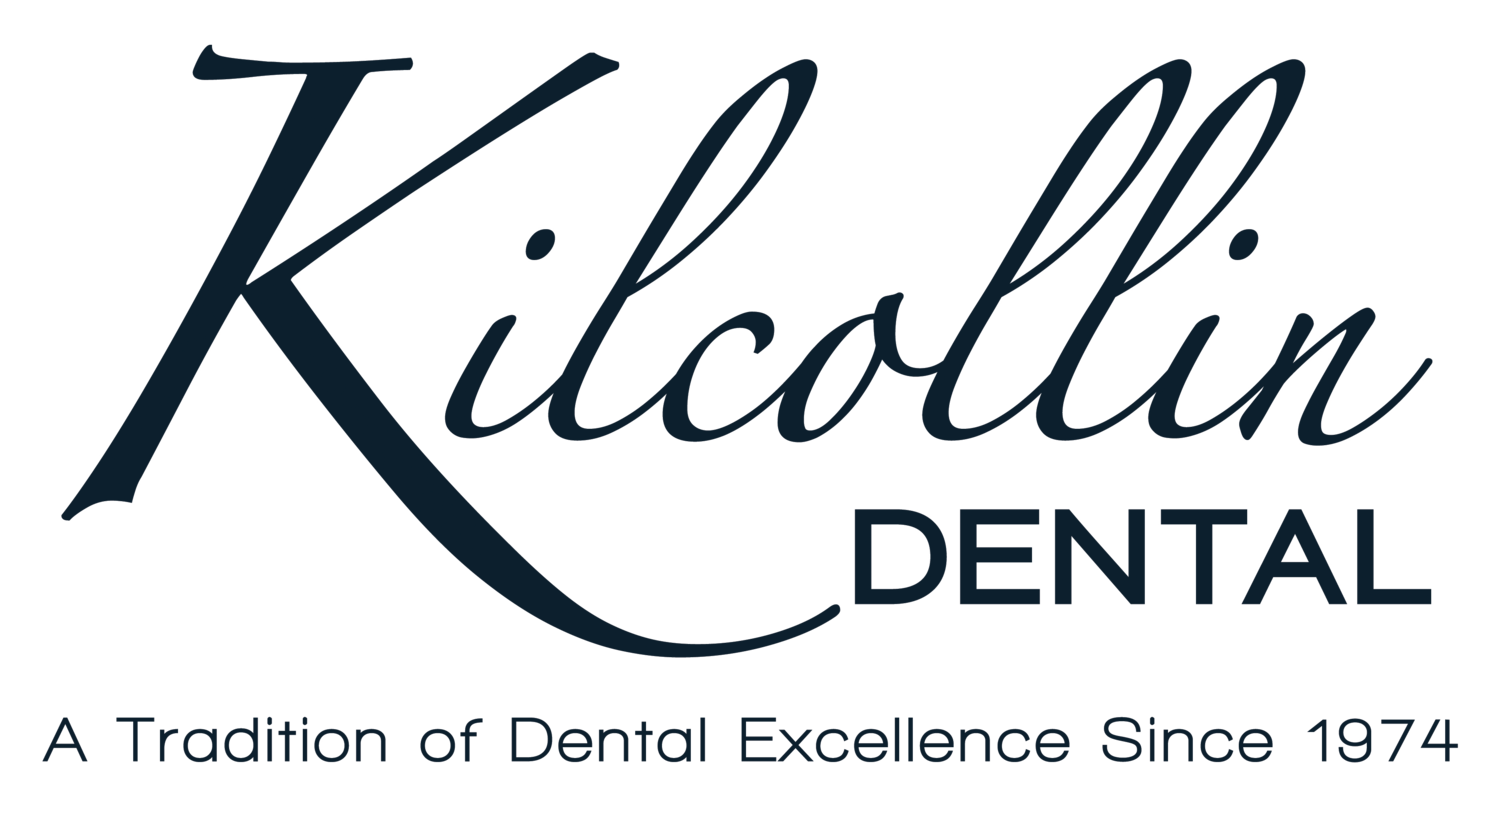 Kilcollin Dental